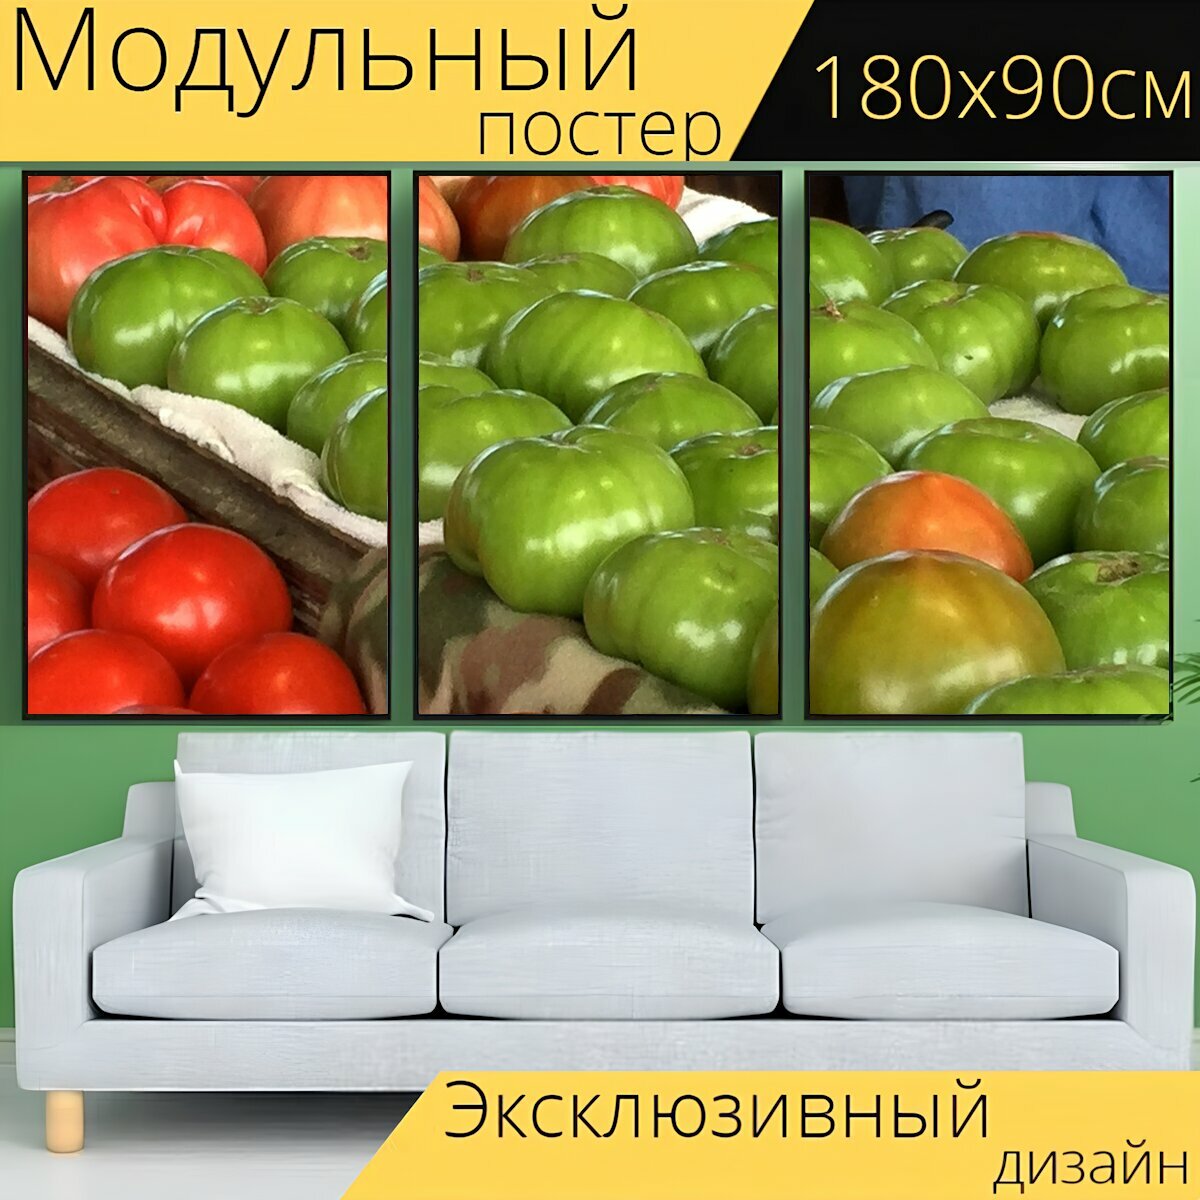 Модульный постер "Фермерский рынок, помидоры, сад" 180 x 90 см. для интерьера